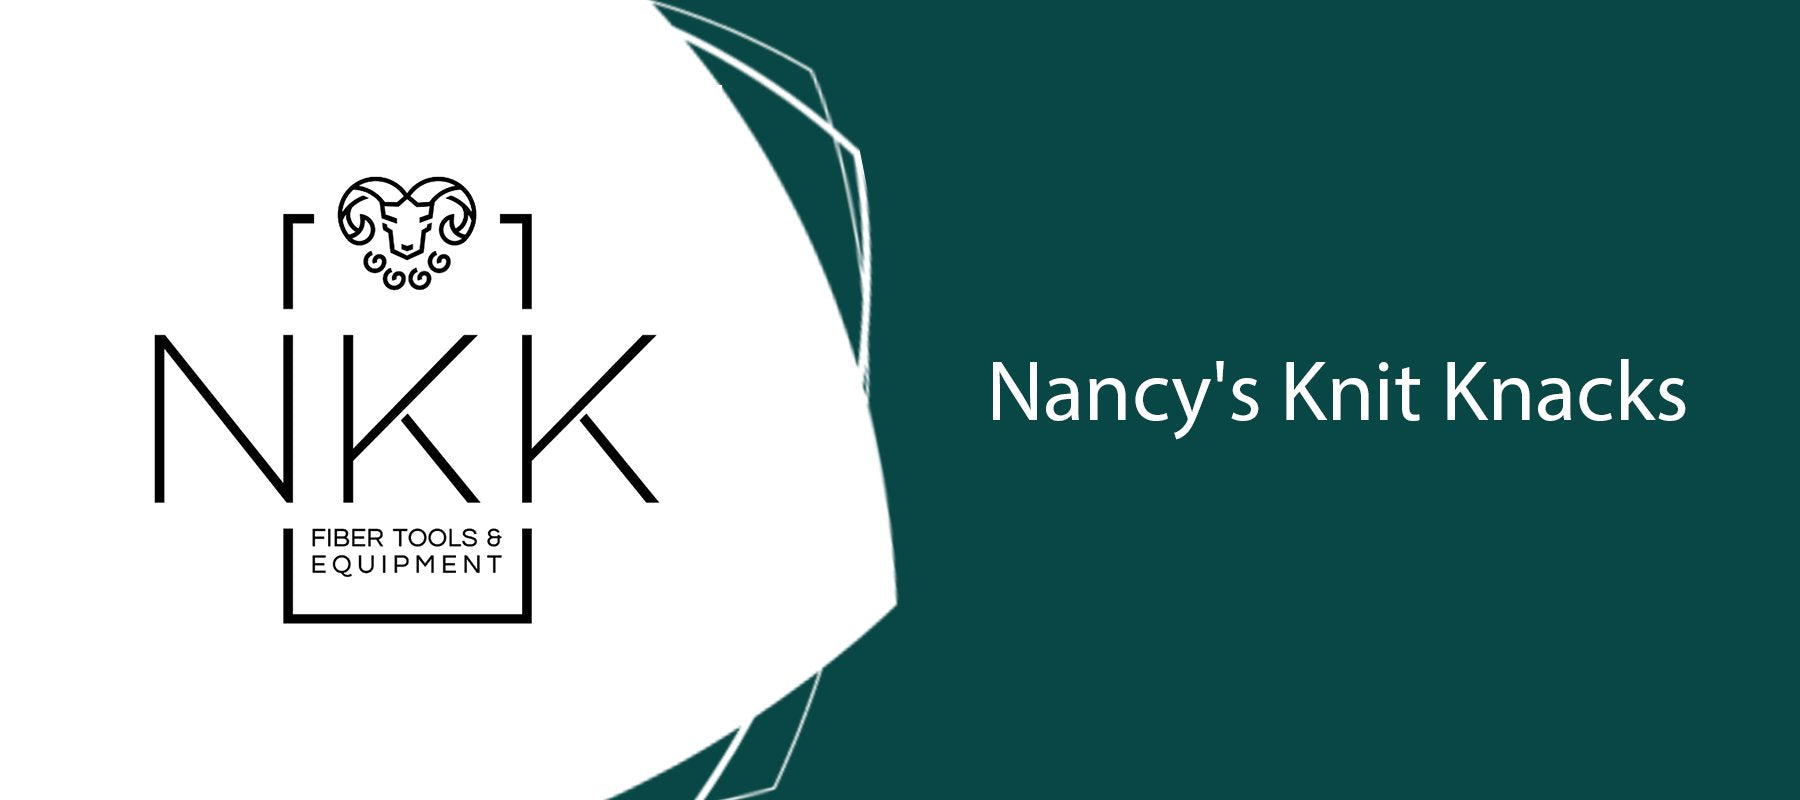 Nancy's Knit Knacks